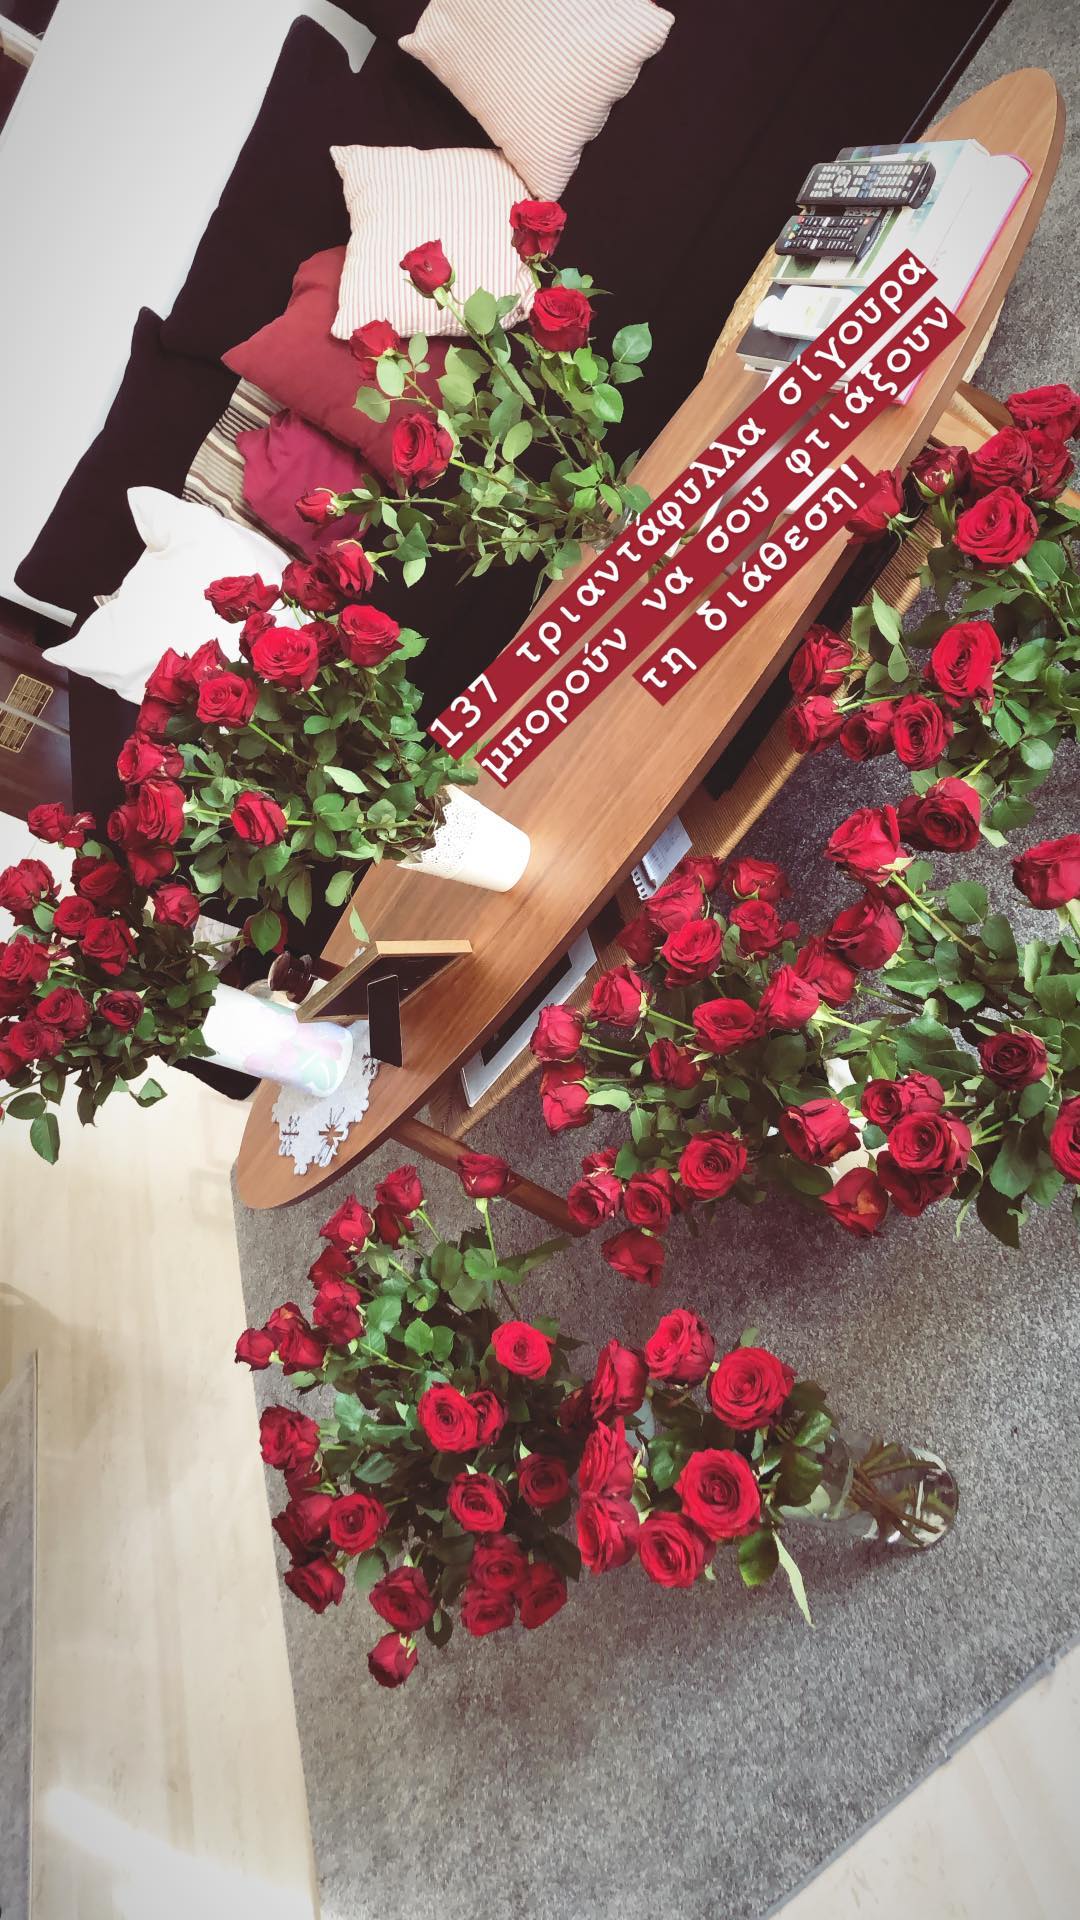 Τζένη Μελιτά: Μας δείχνει τις αγαπημένες γωνίες του σπιτιού της και το εντυπωσιακό δώρο που δέχτηκε! (εικόνες)